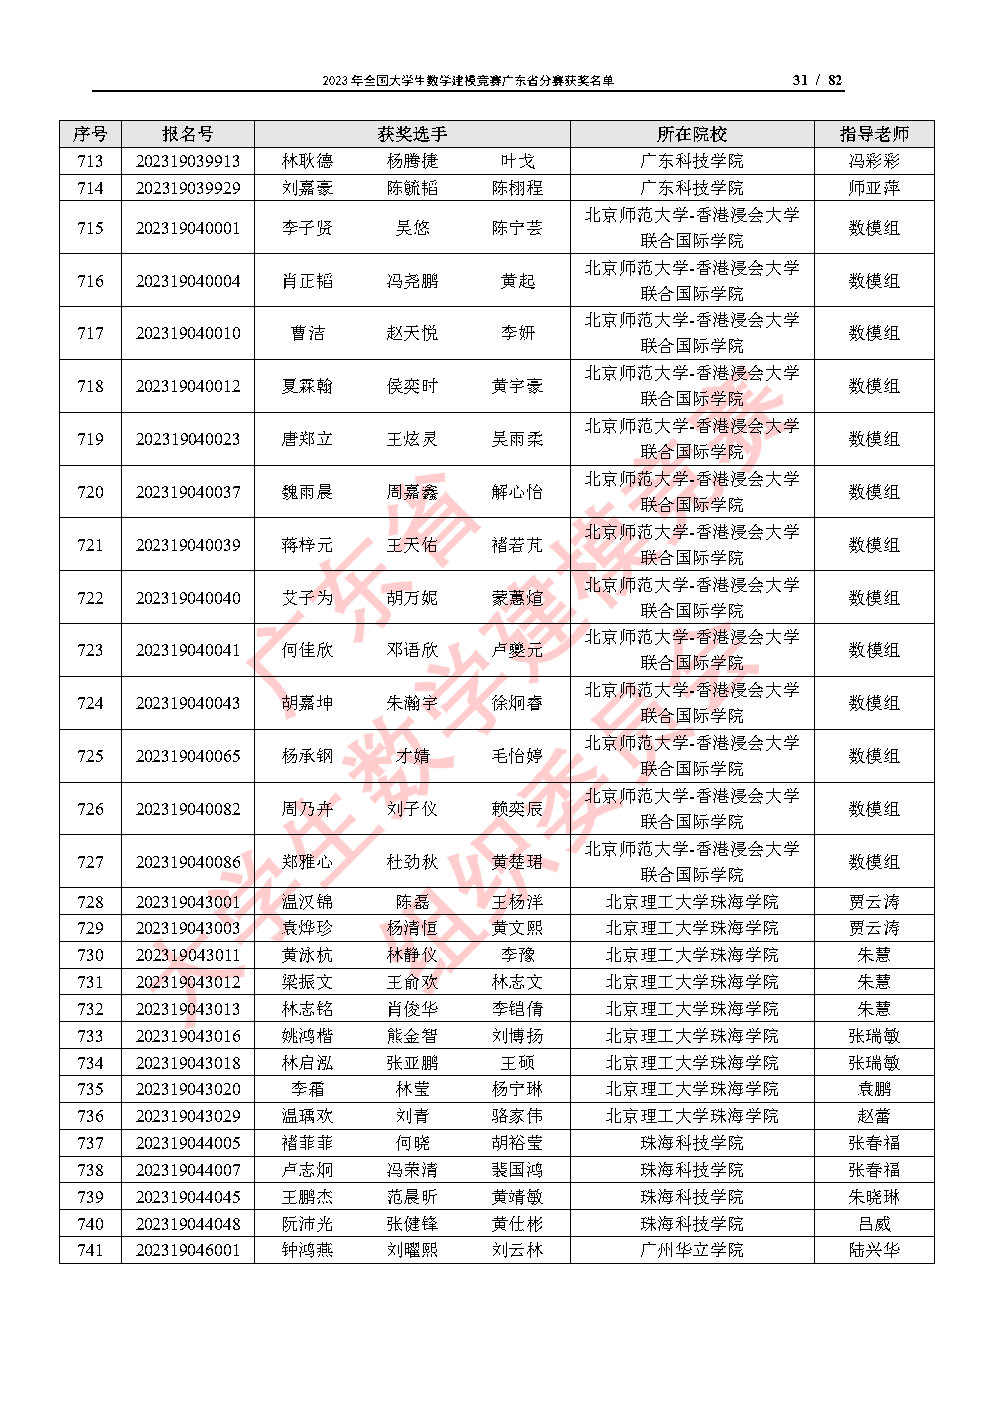 2023年全国大学生数学建模竞赛广东省分赛获奖名单_Page31.jpg